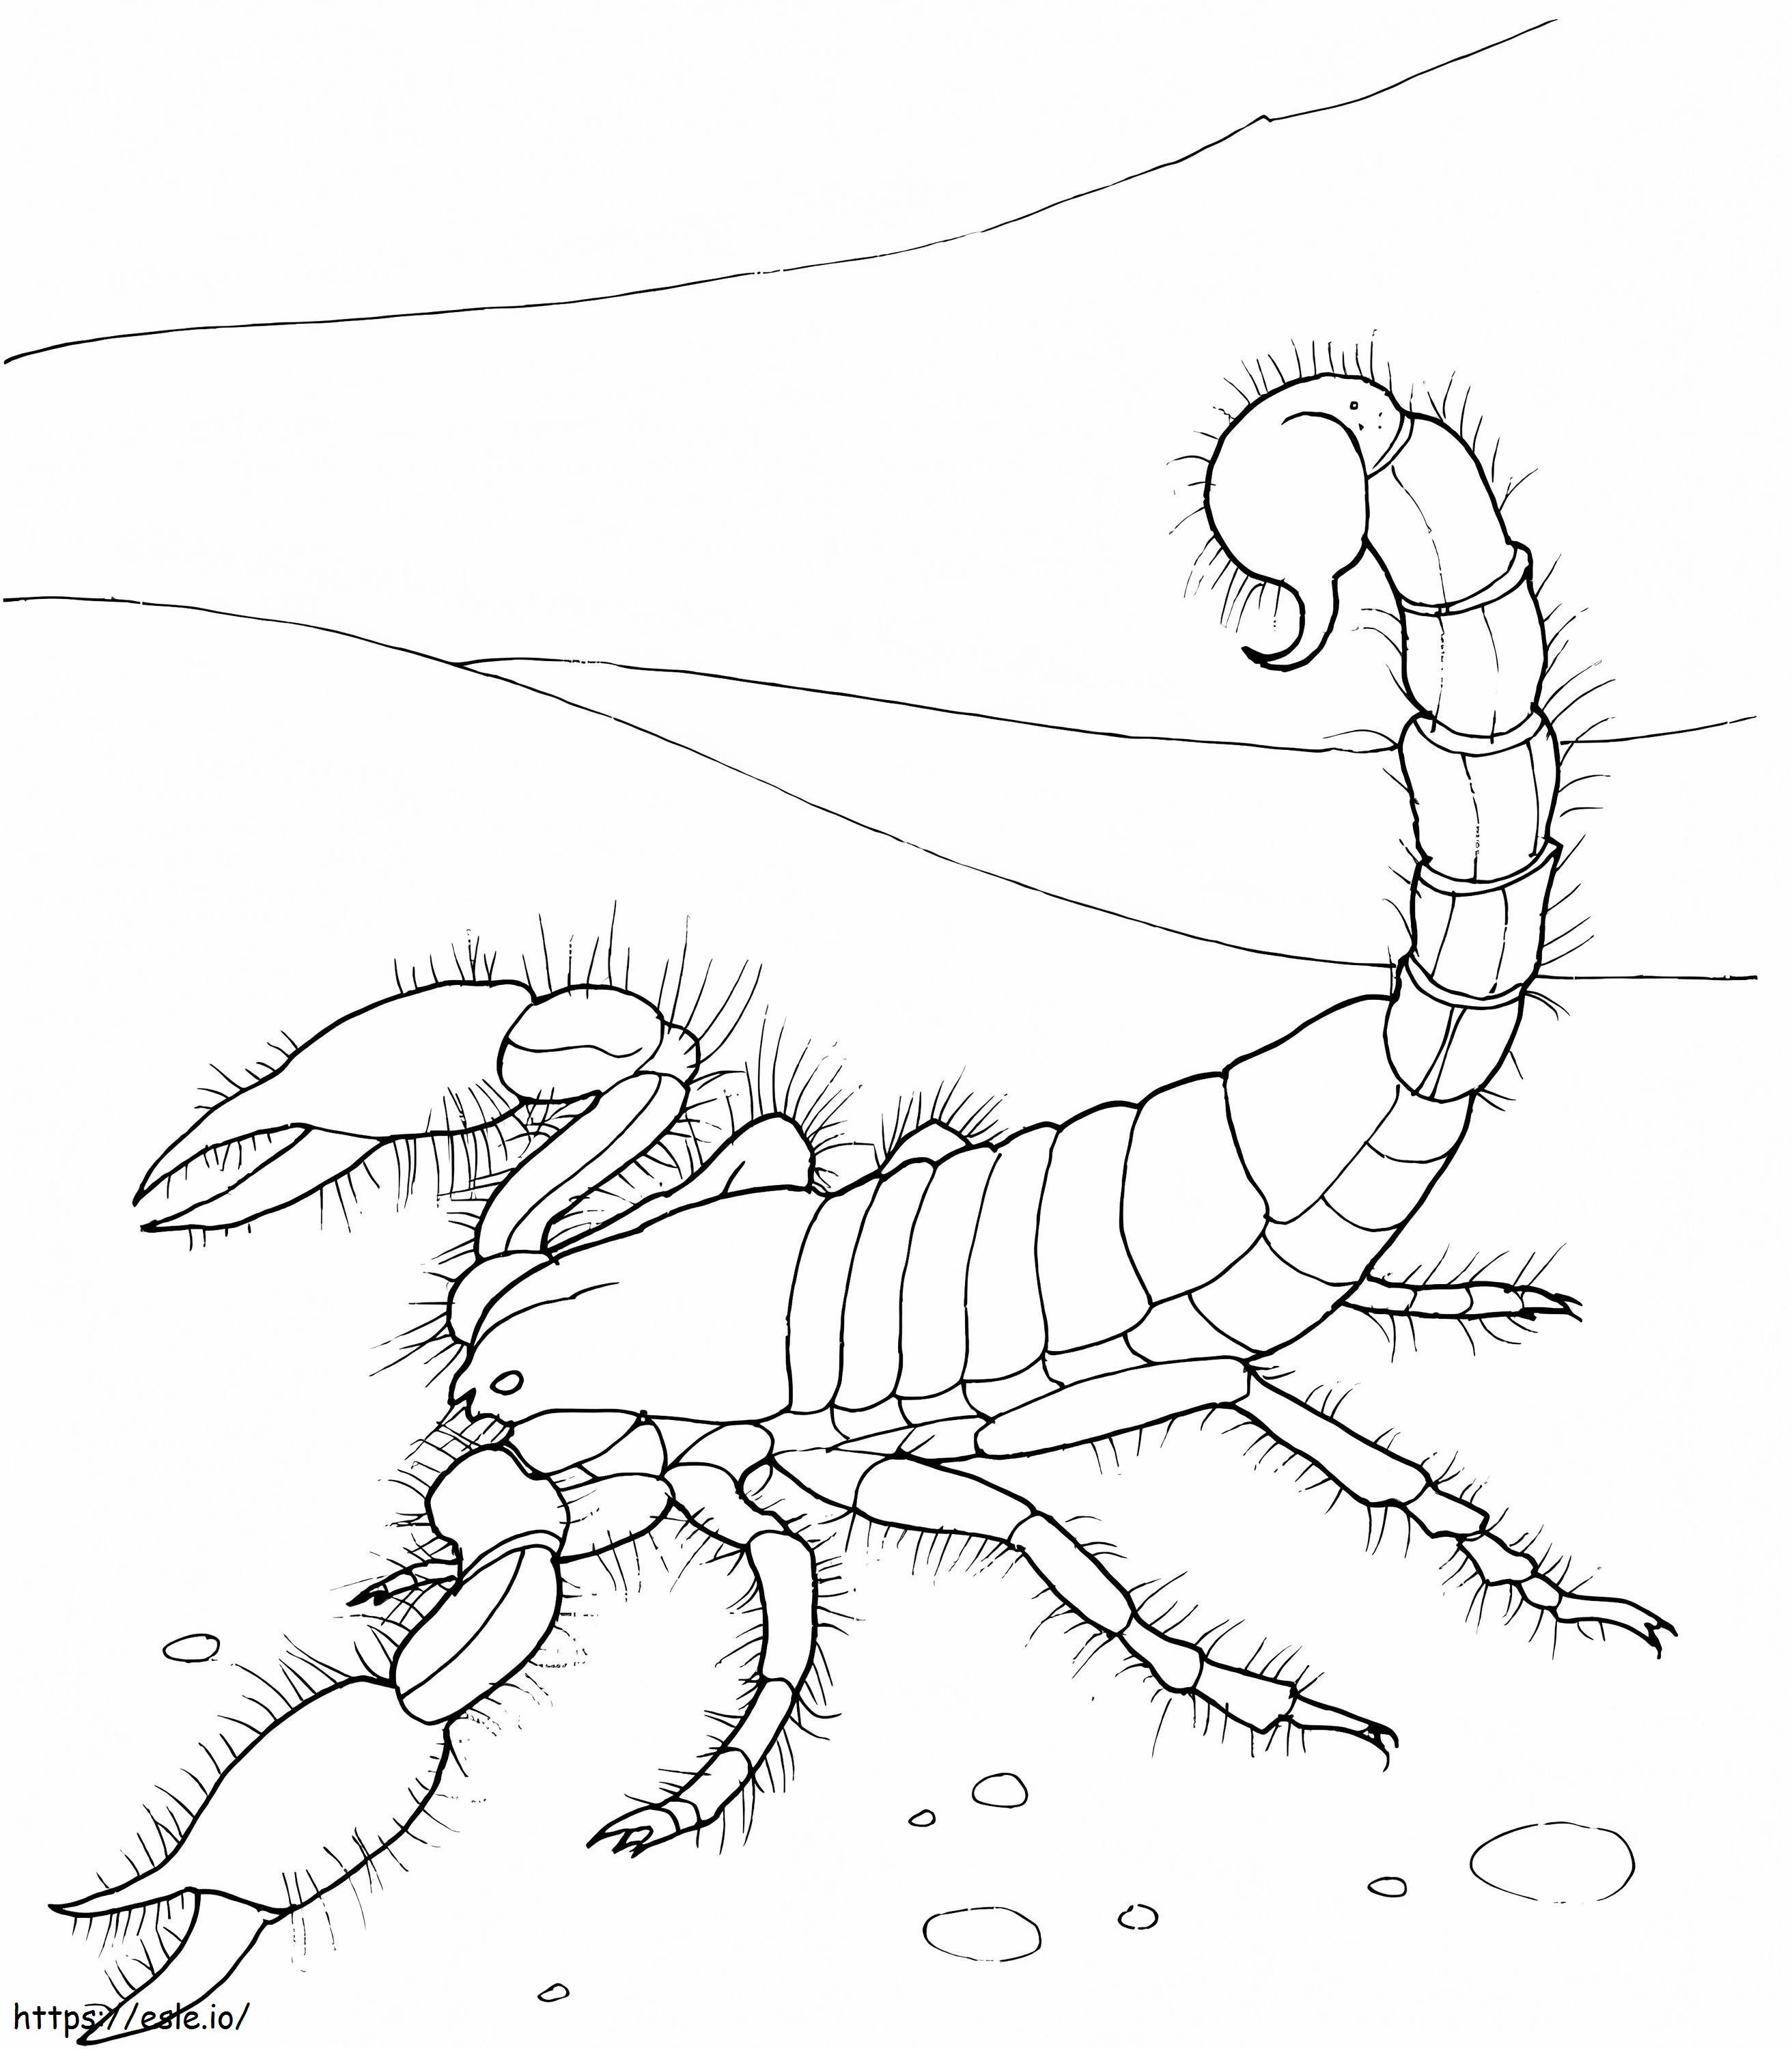 Escorpião Gigante do Deserto para colorir